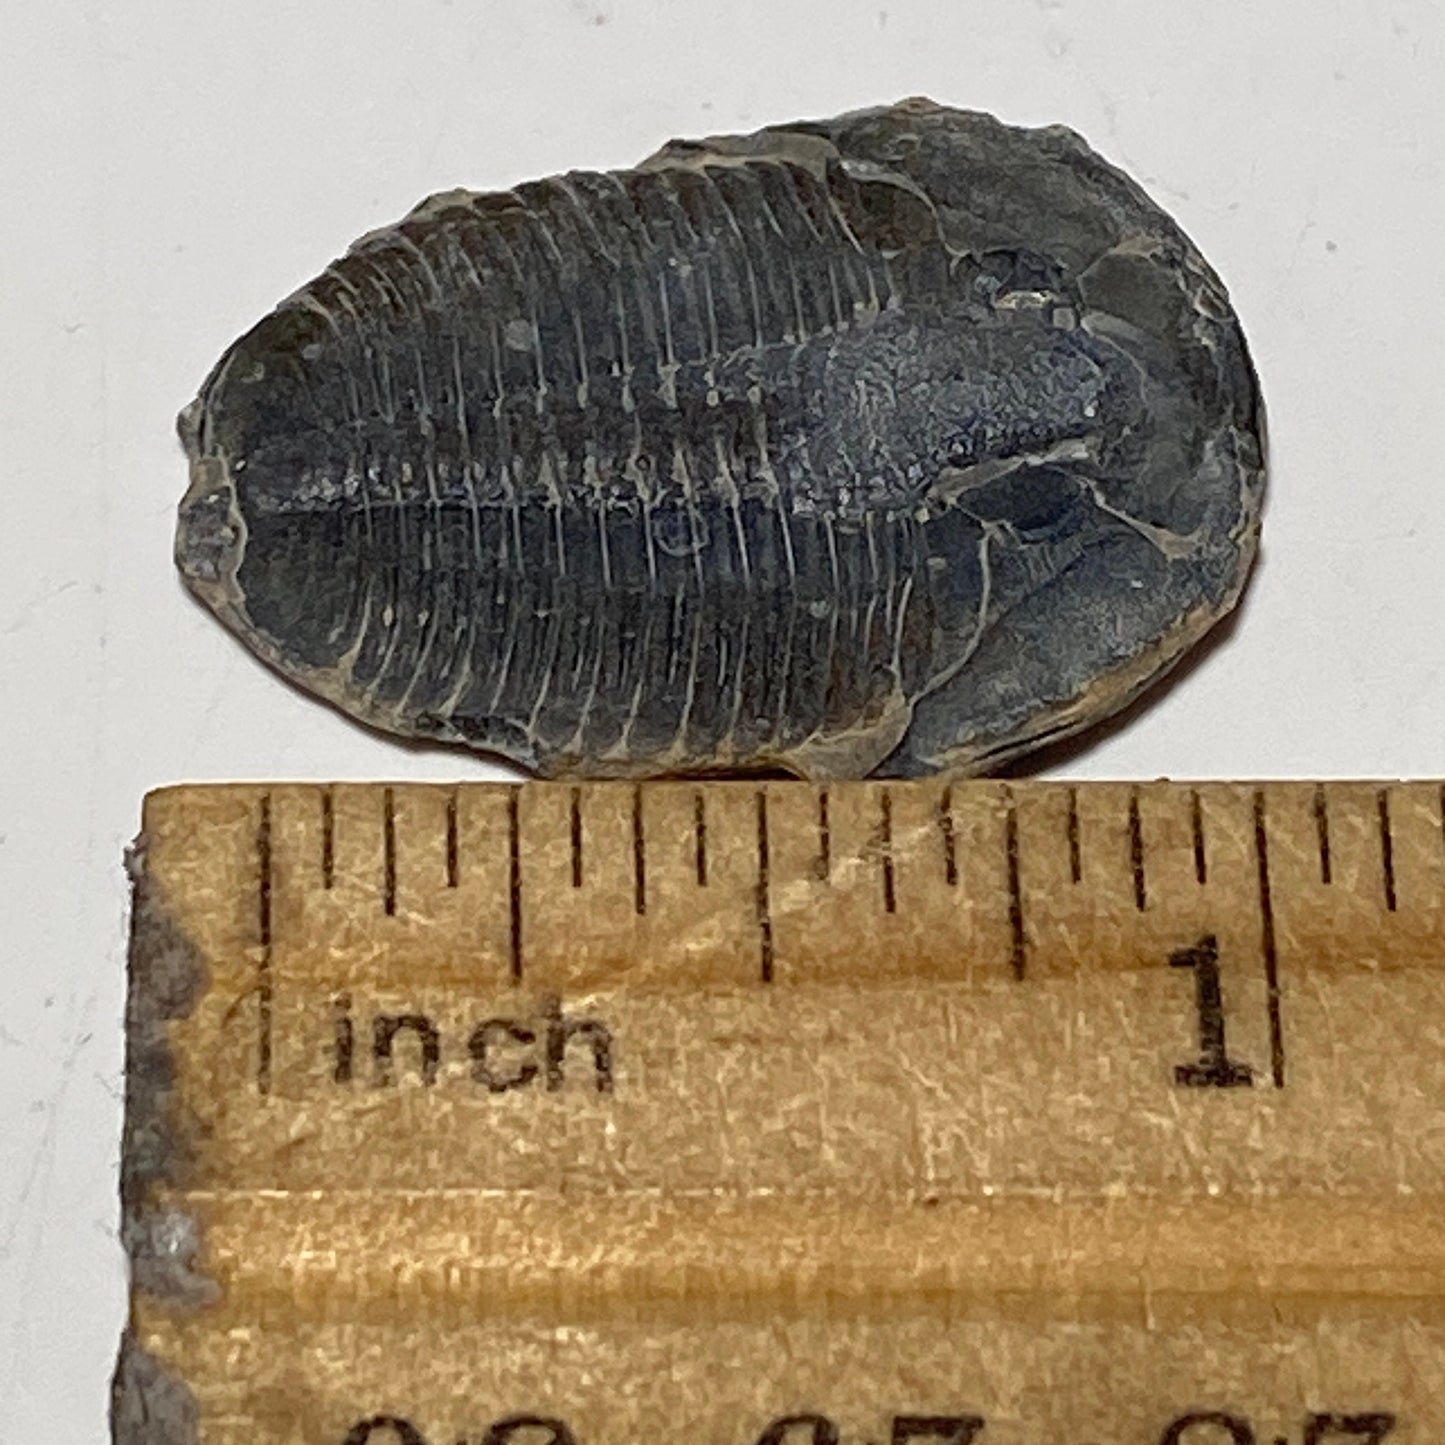 Trilobite fossil, Elrathia King from Utah | 1 inch long, Utah fossil, fossil collectible, trilobite specimen, fossil lover gift